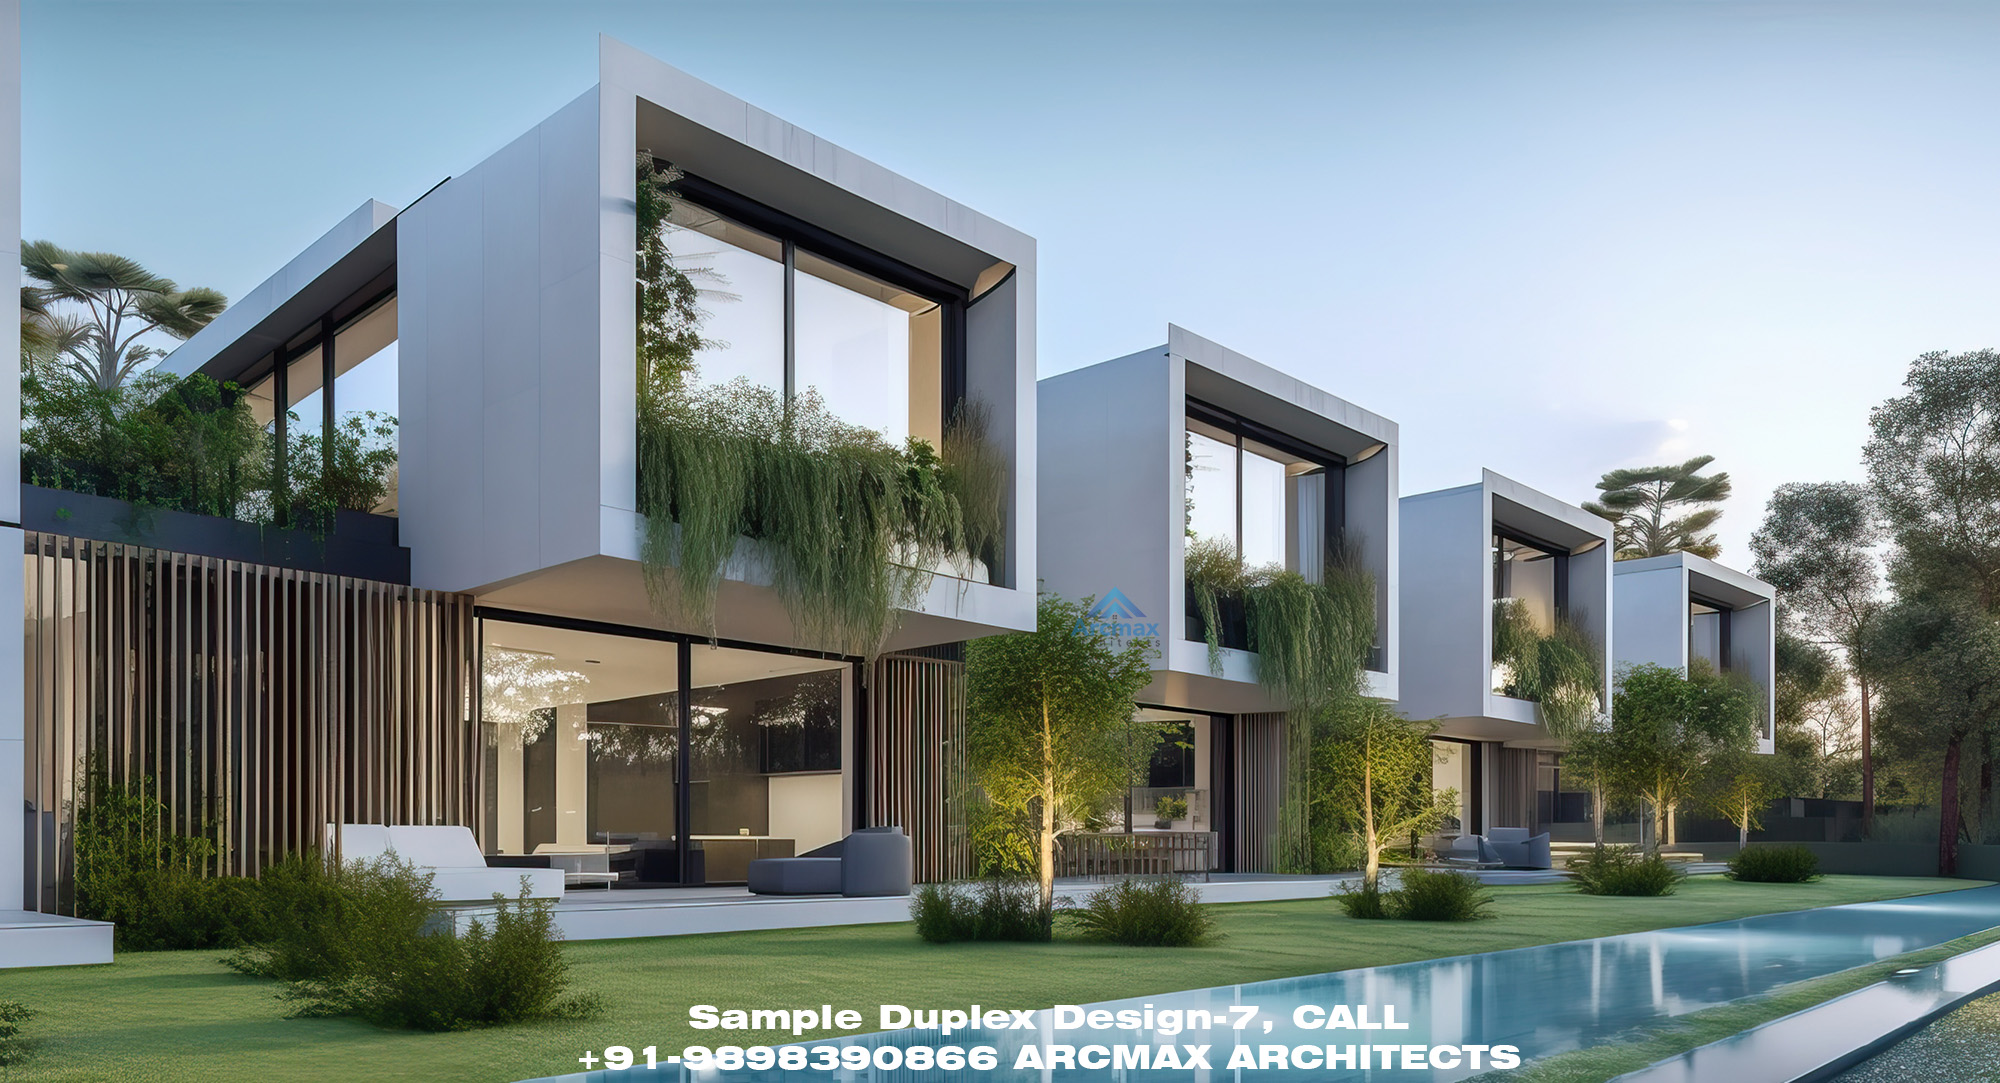 Sample Duplex Design-7